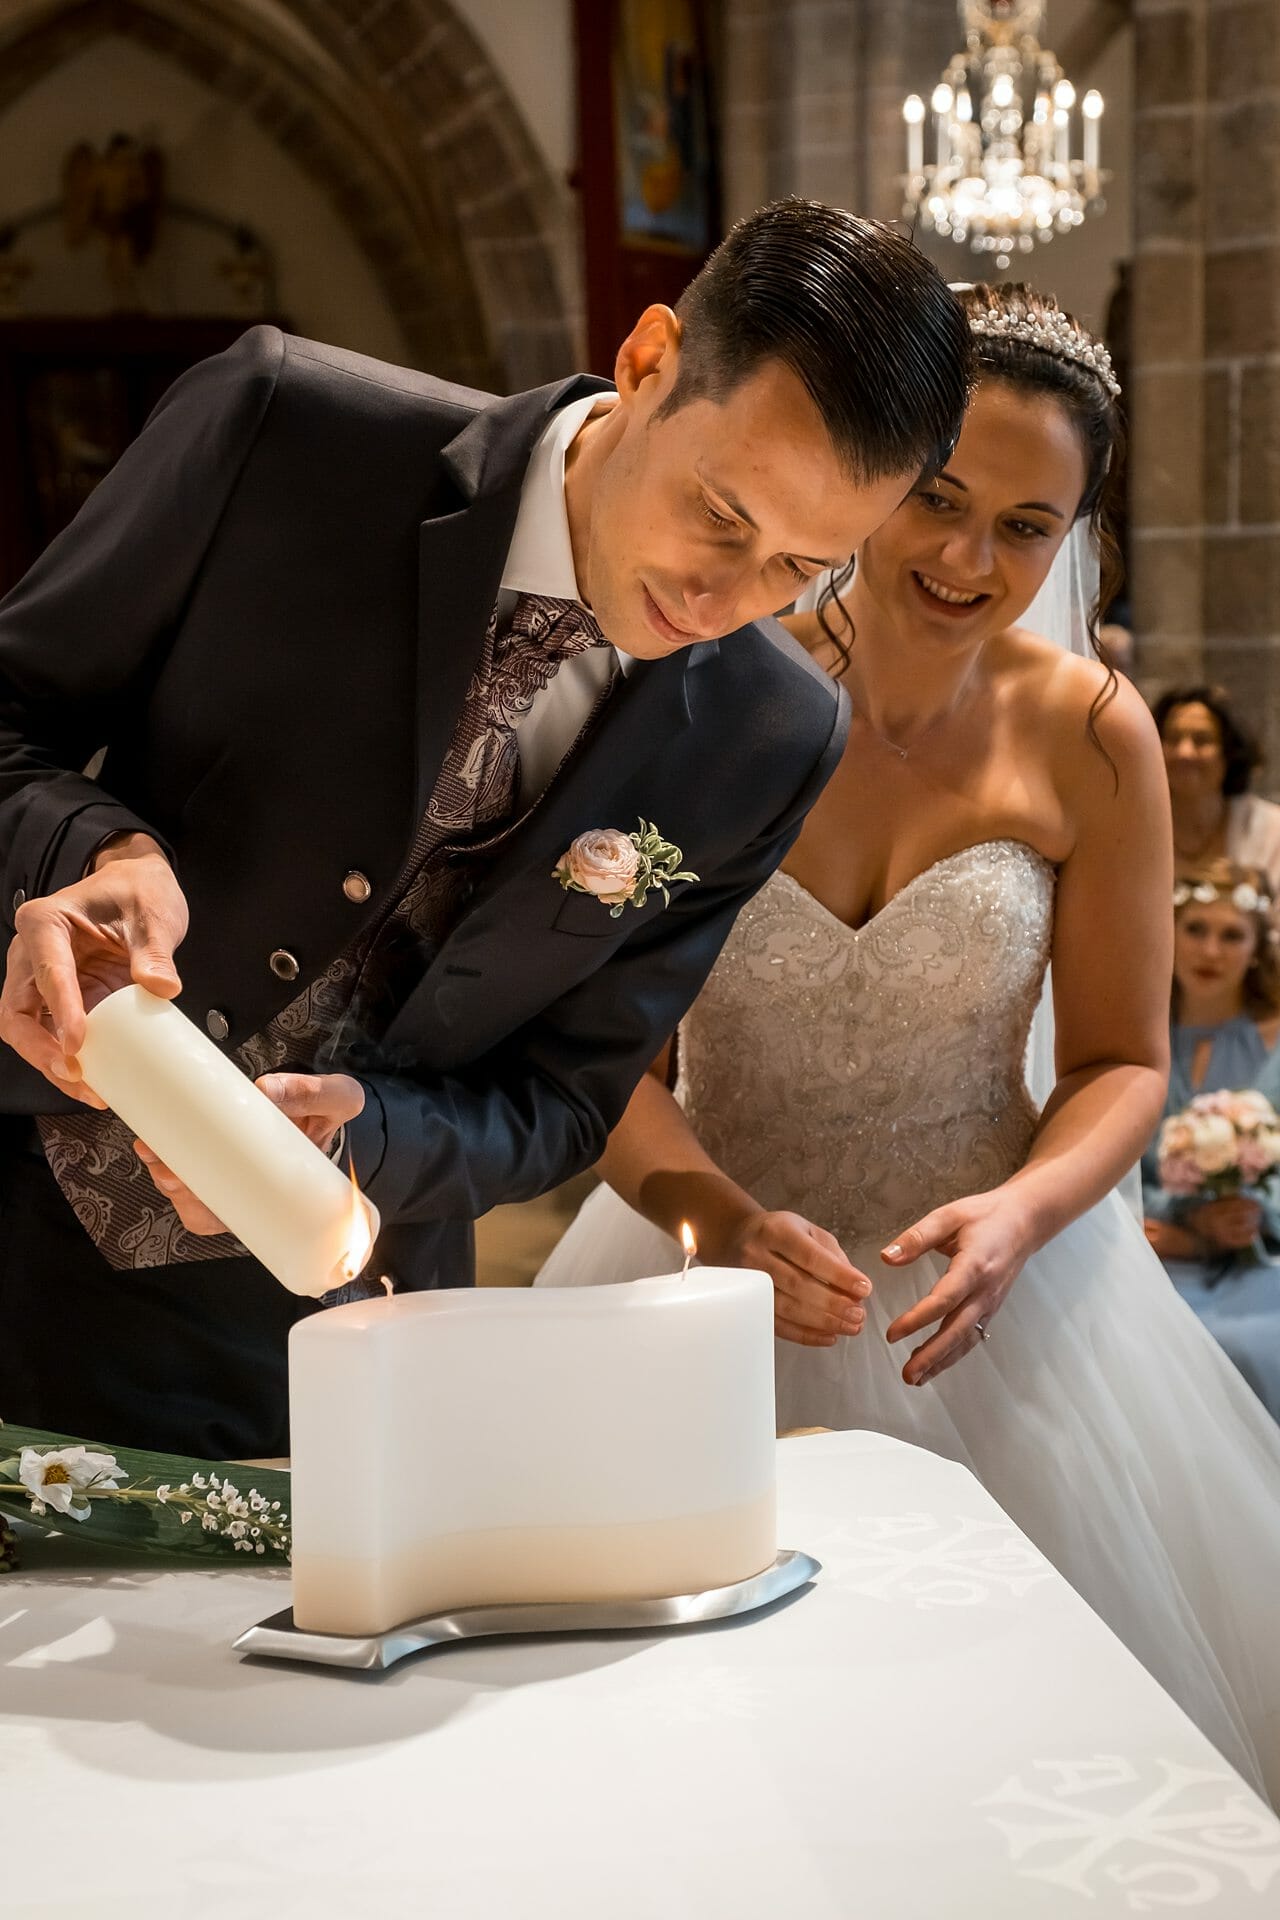 Eine Braut und ein Bräutigam zünden in einer Kirche eine Kerze an.